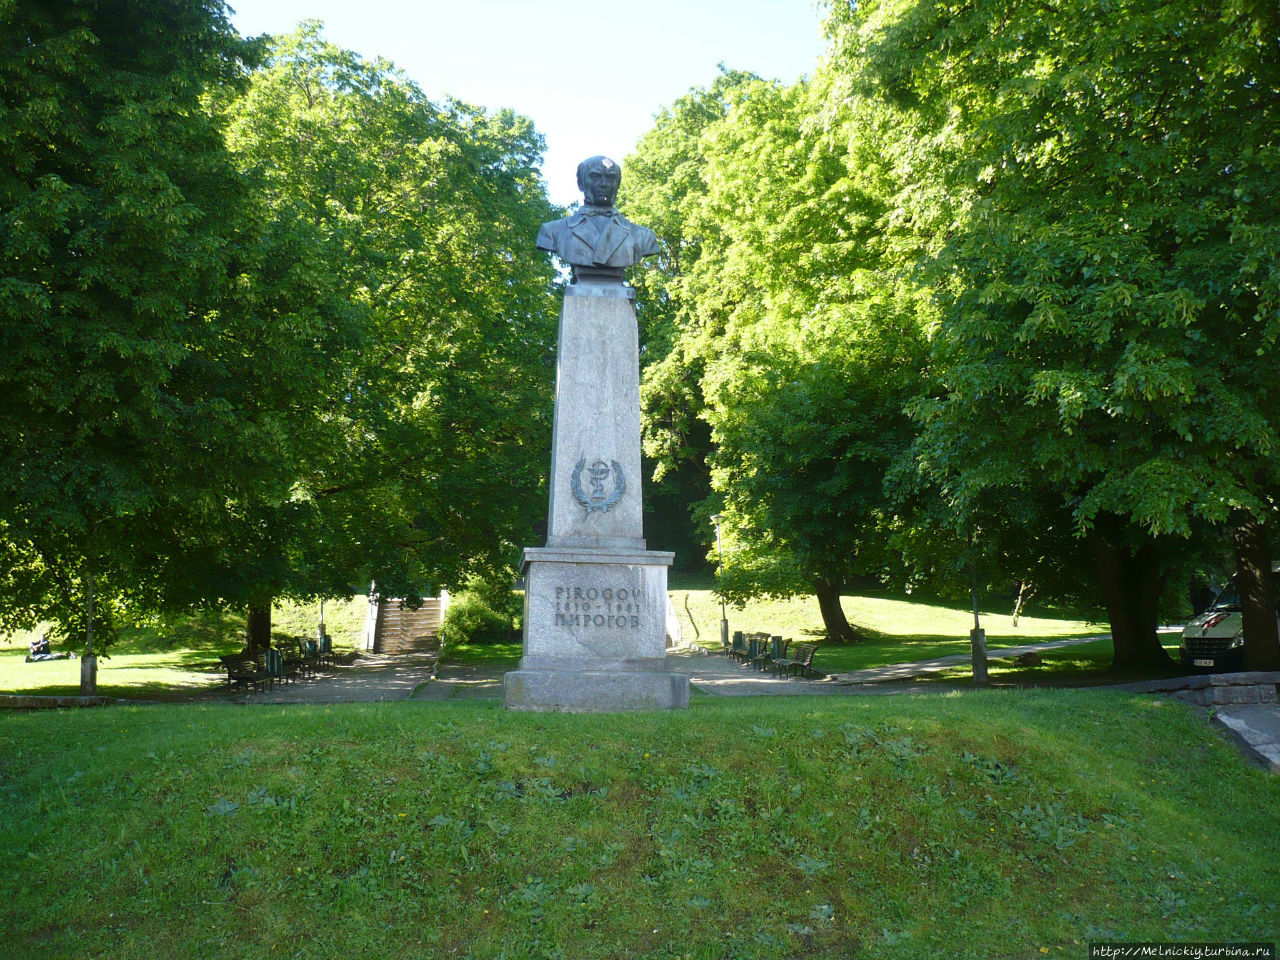 Памятник Николаю Ивановичу Пирогову / The Monument To Nikolay Ivanovich Pirogov